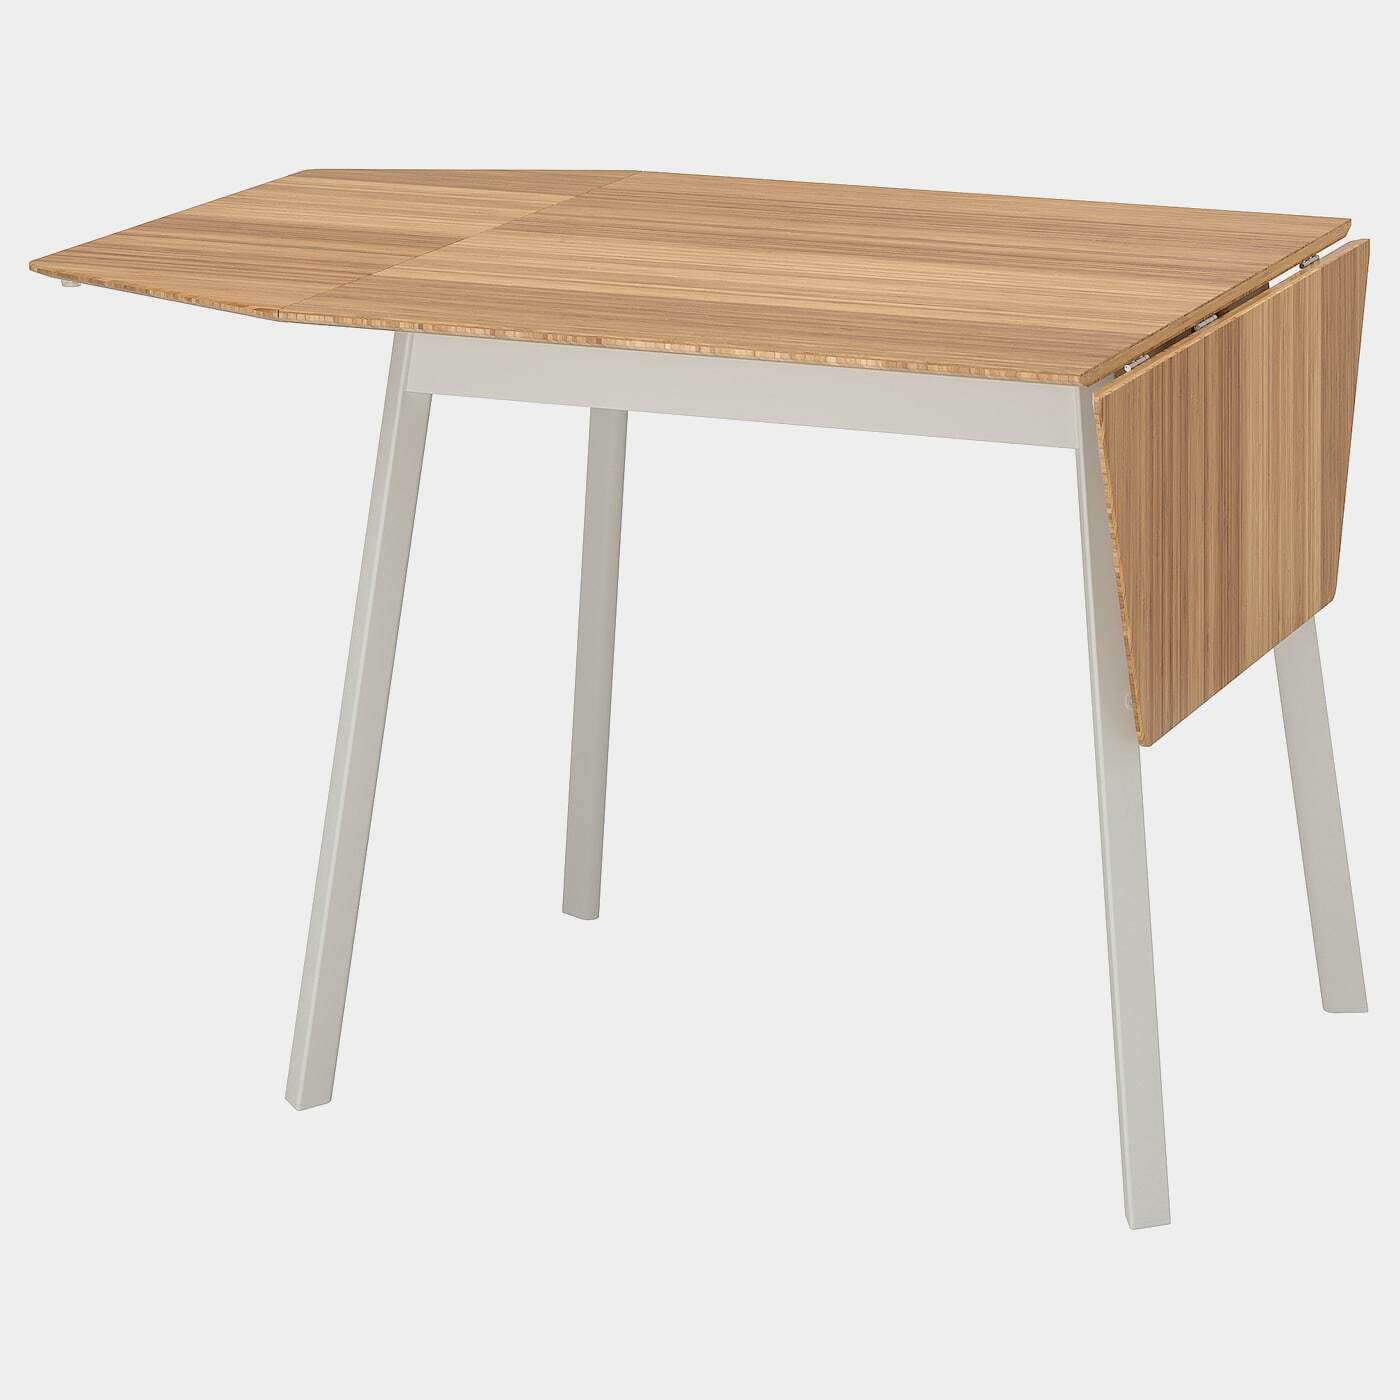 IKEA PS 2012 Klapptisch  - Esstische - Möbel Ideen für dein Zuhause von Home Trends. Möbel Trends von Social Media Influencer für dein Skandi Zuhause.